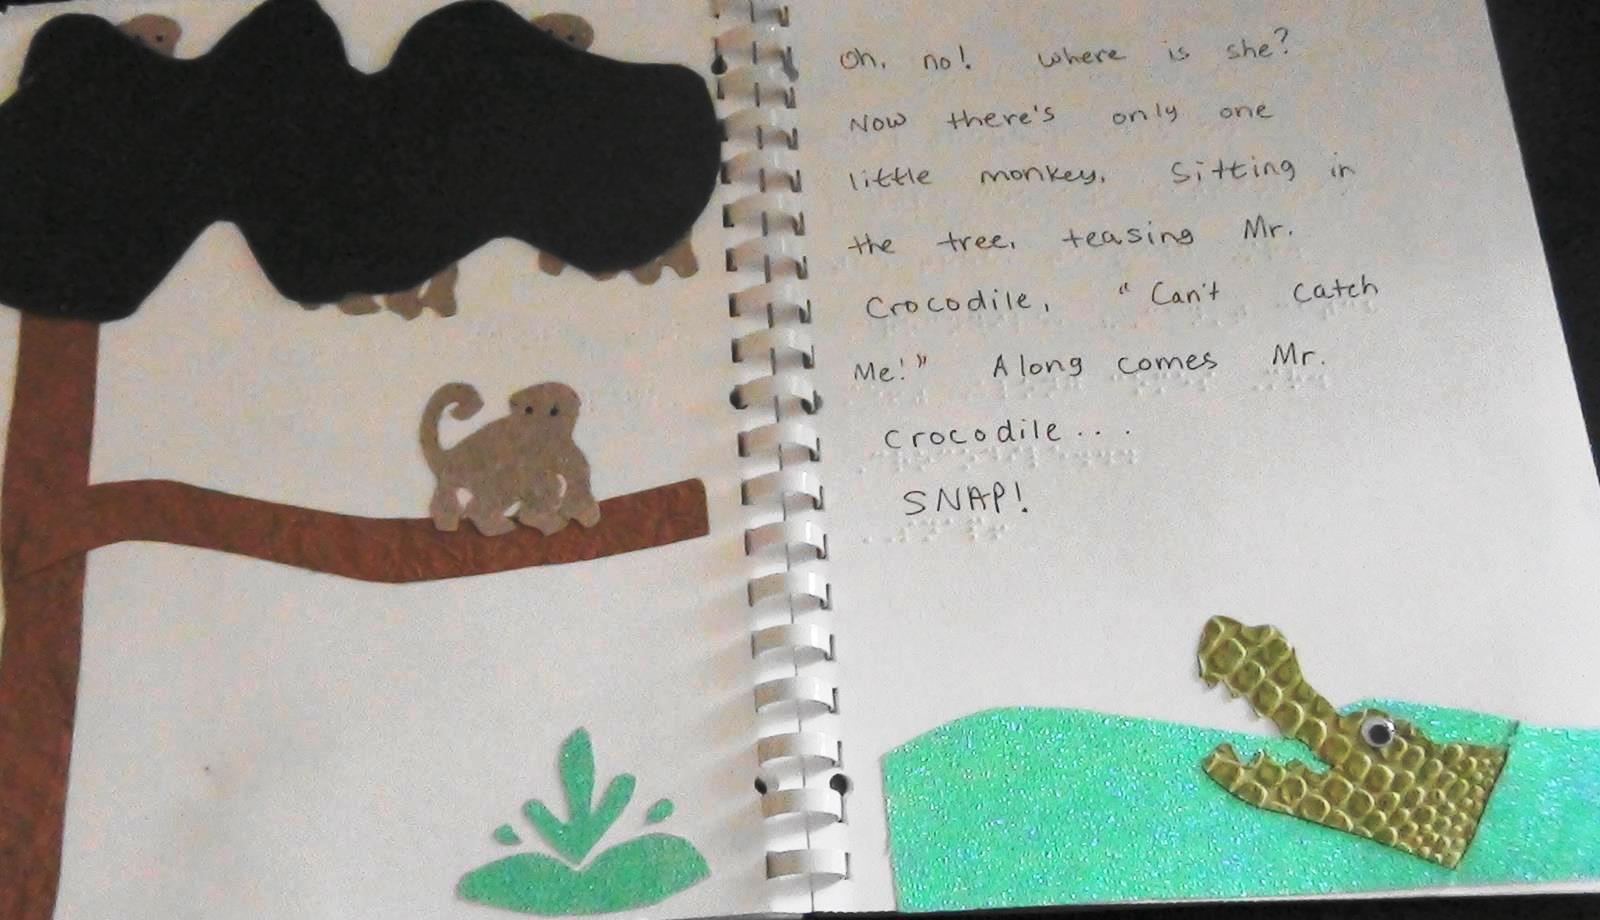 Crocodile and monkeys